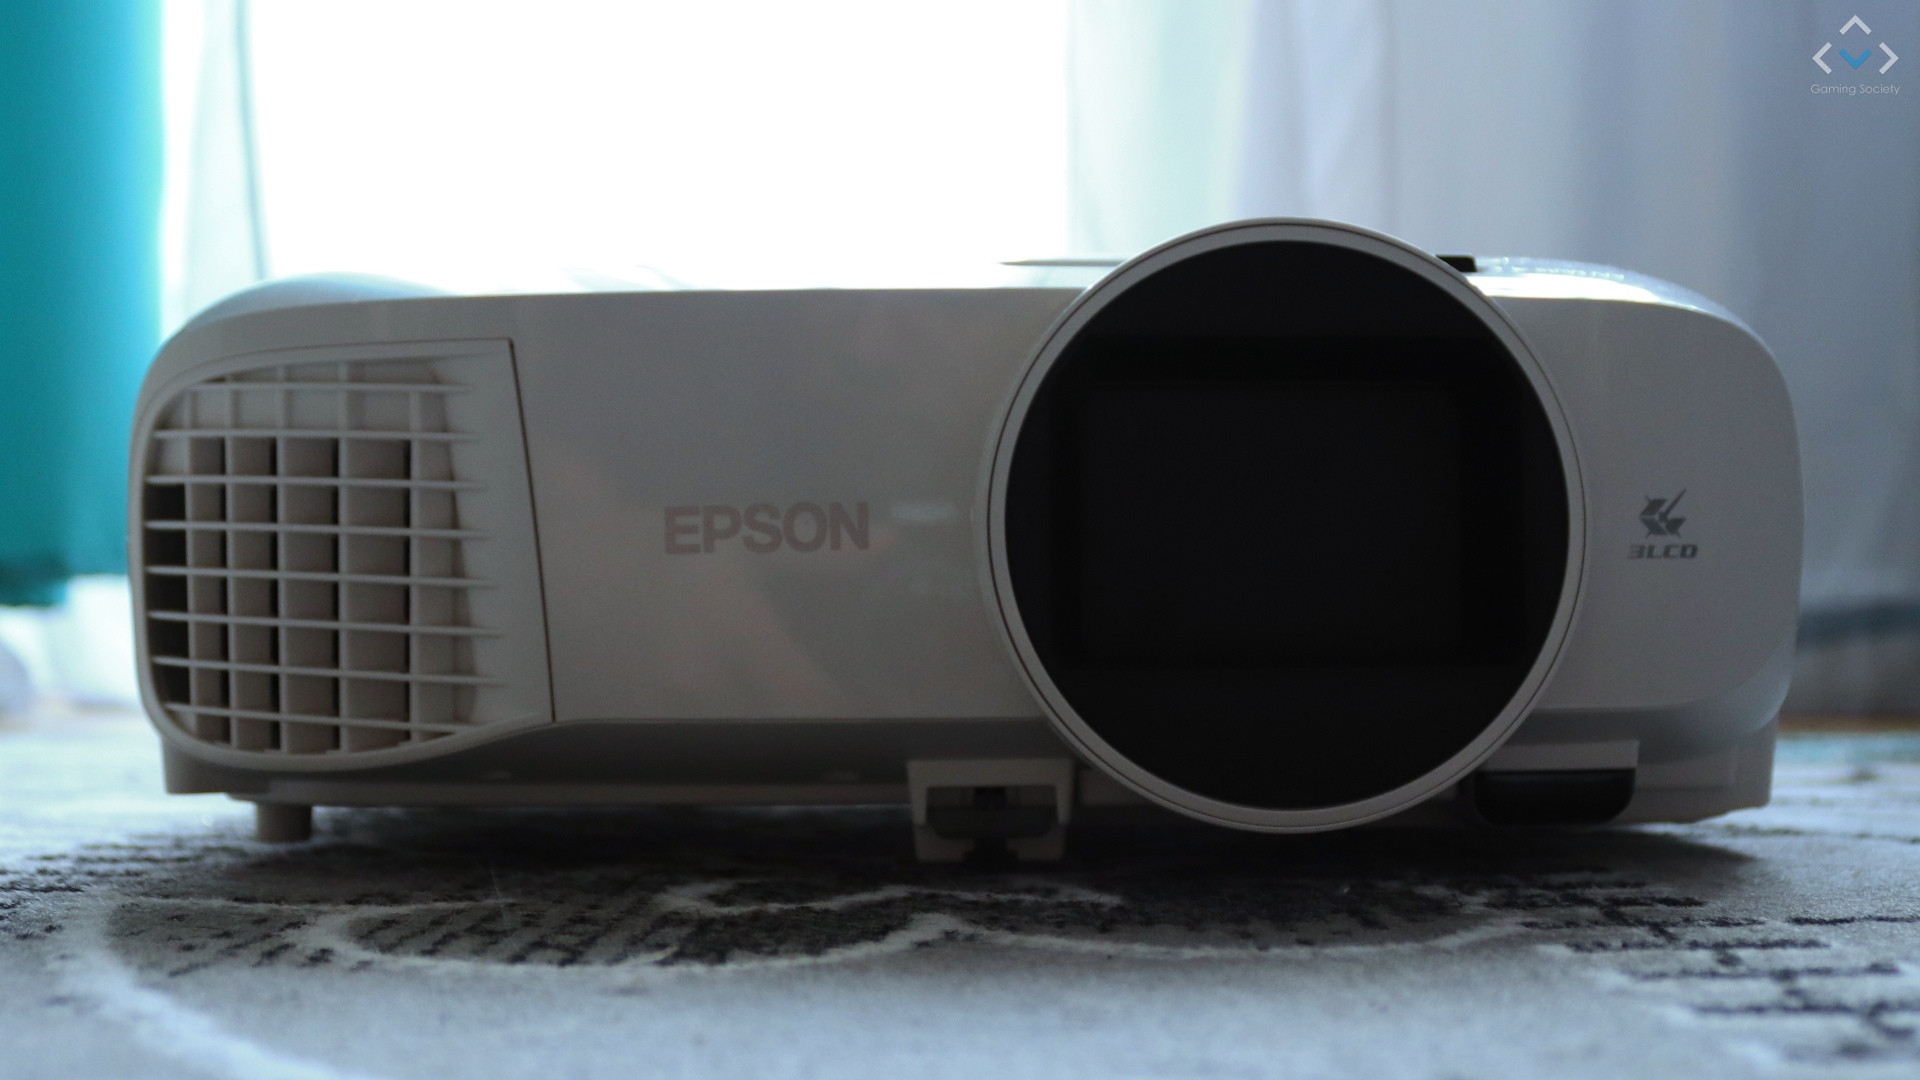 Epson EH TW5400